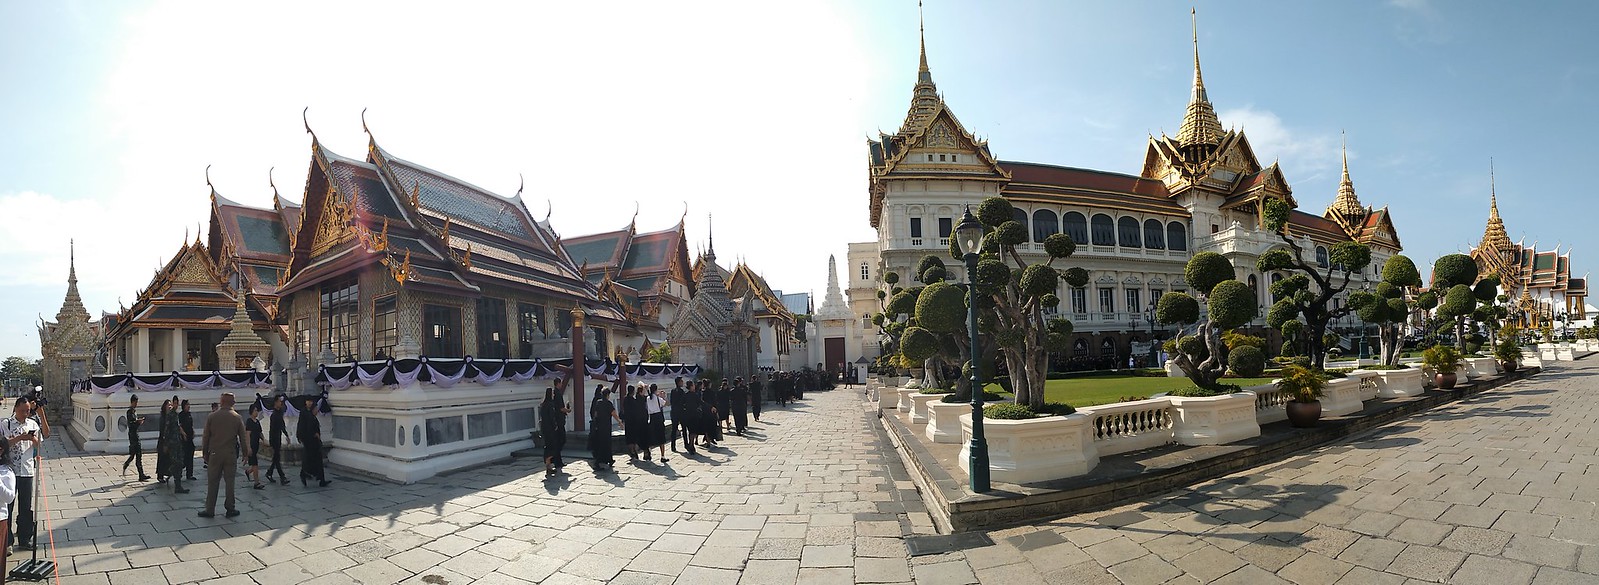 Bangkok esencial: Gran Palacio, Wat Pho y Wat Arun. Chinatown y Wat Traimit. - TAILANDIA POR LIBRE: TEMPLOS, ISLAS Y PLAYAS (16)